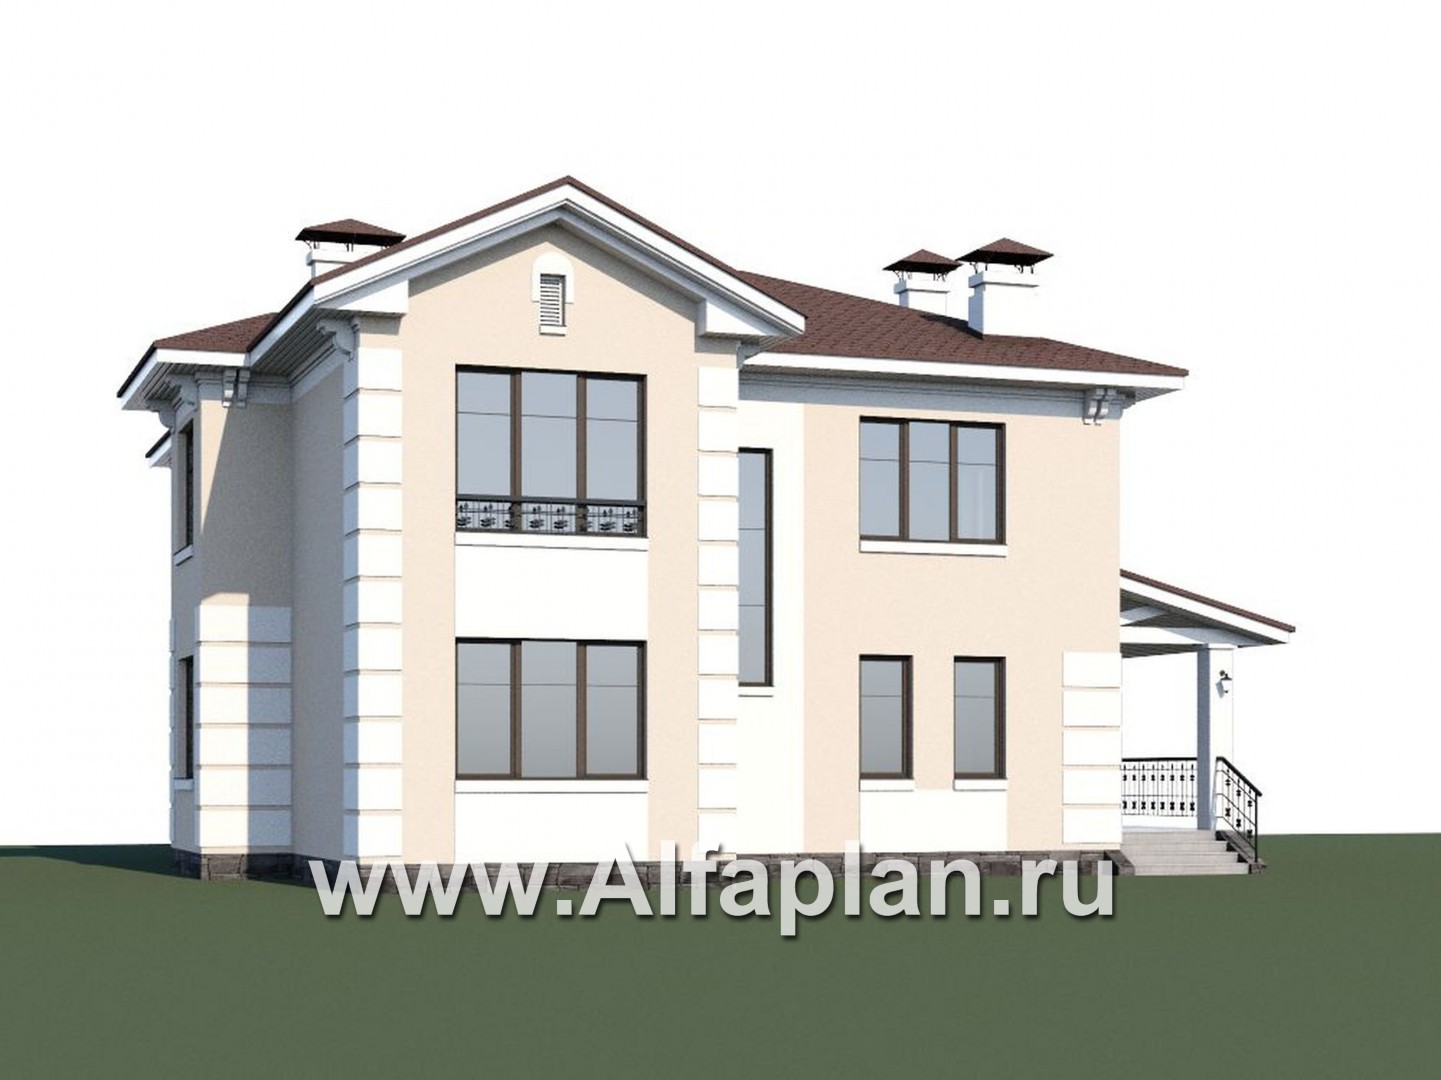 Проекты домов Альфаплан - «Галатея» - проект двухэтажного дома с эркером и с остекленной верандой, в стиле эклектика - дополнительное изображение №1